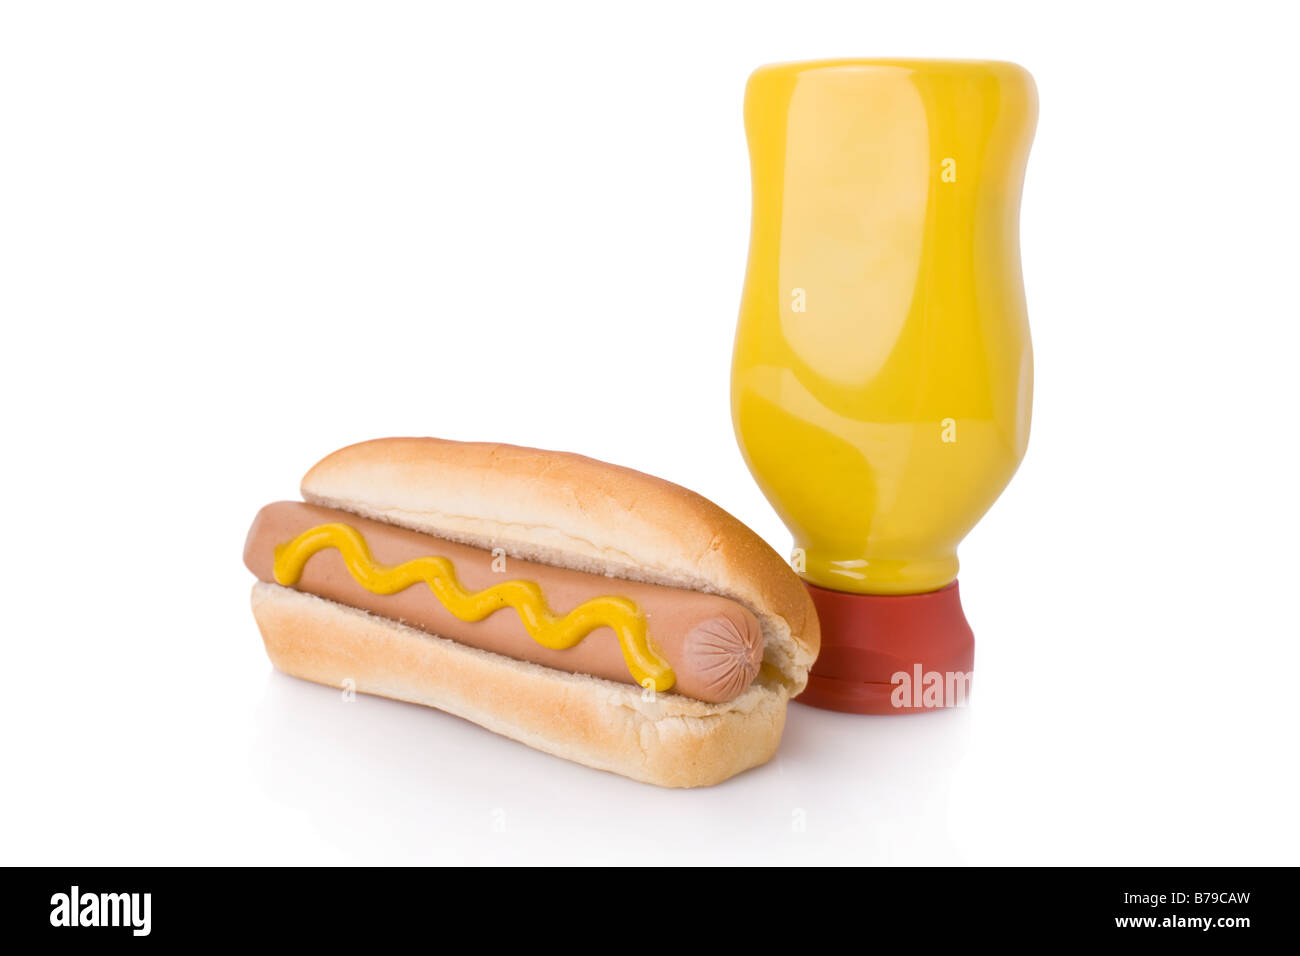 La senape hotdog e una bottiglia di senape isolato su uno sfondo bianco Foto Stock